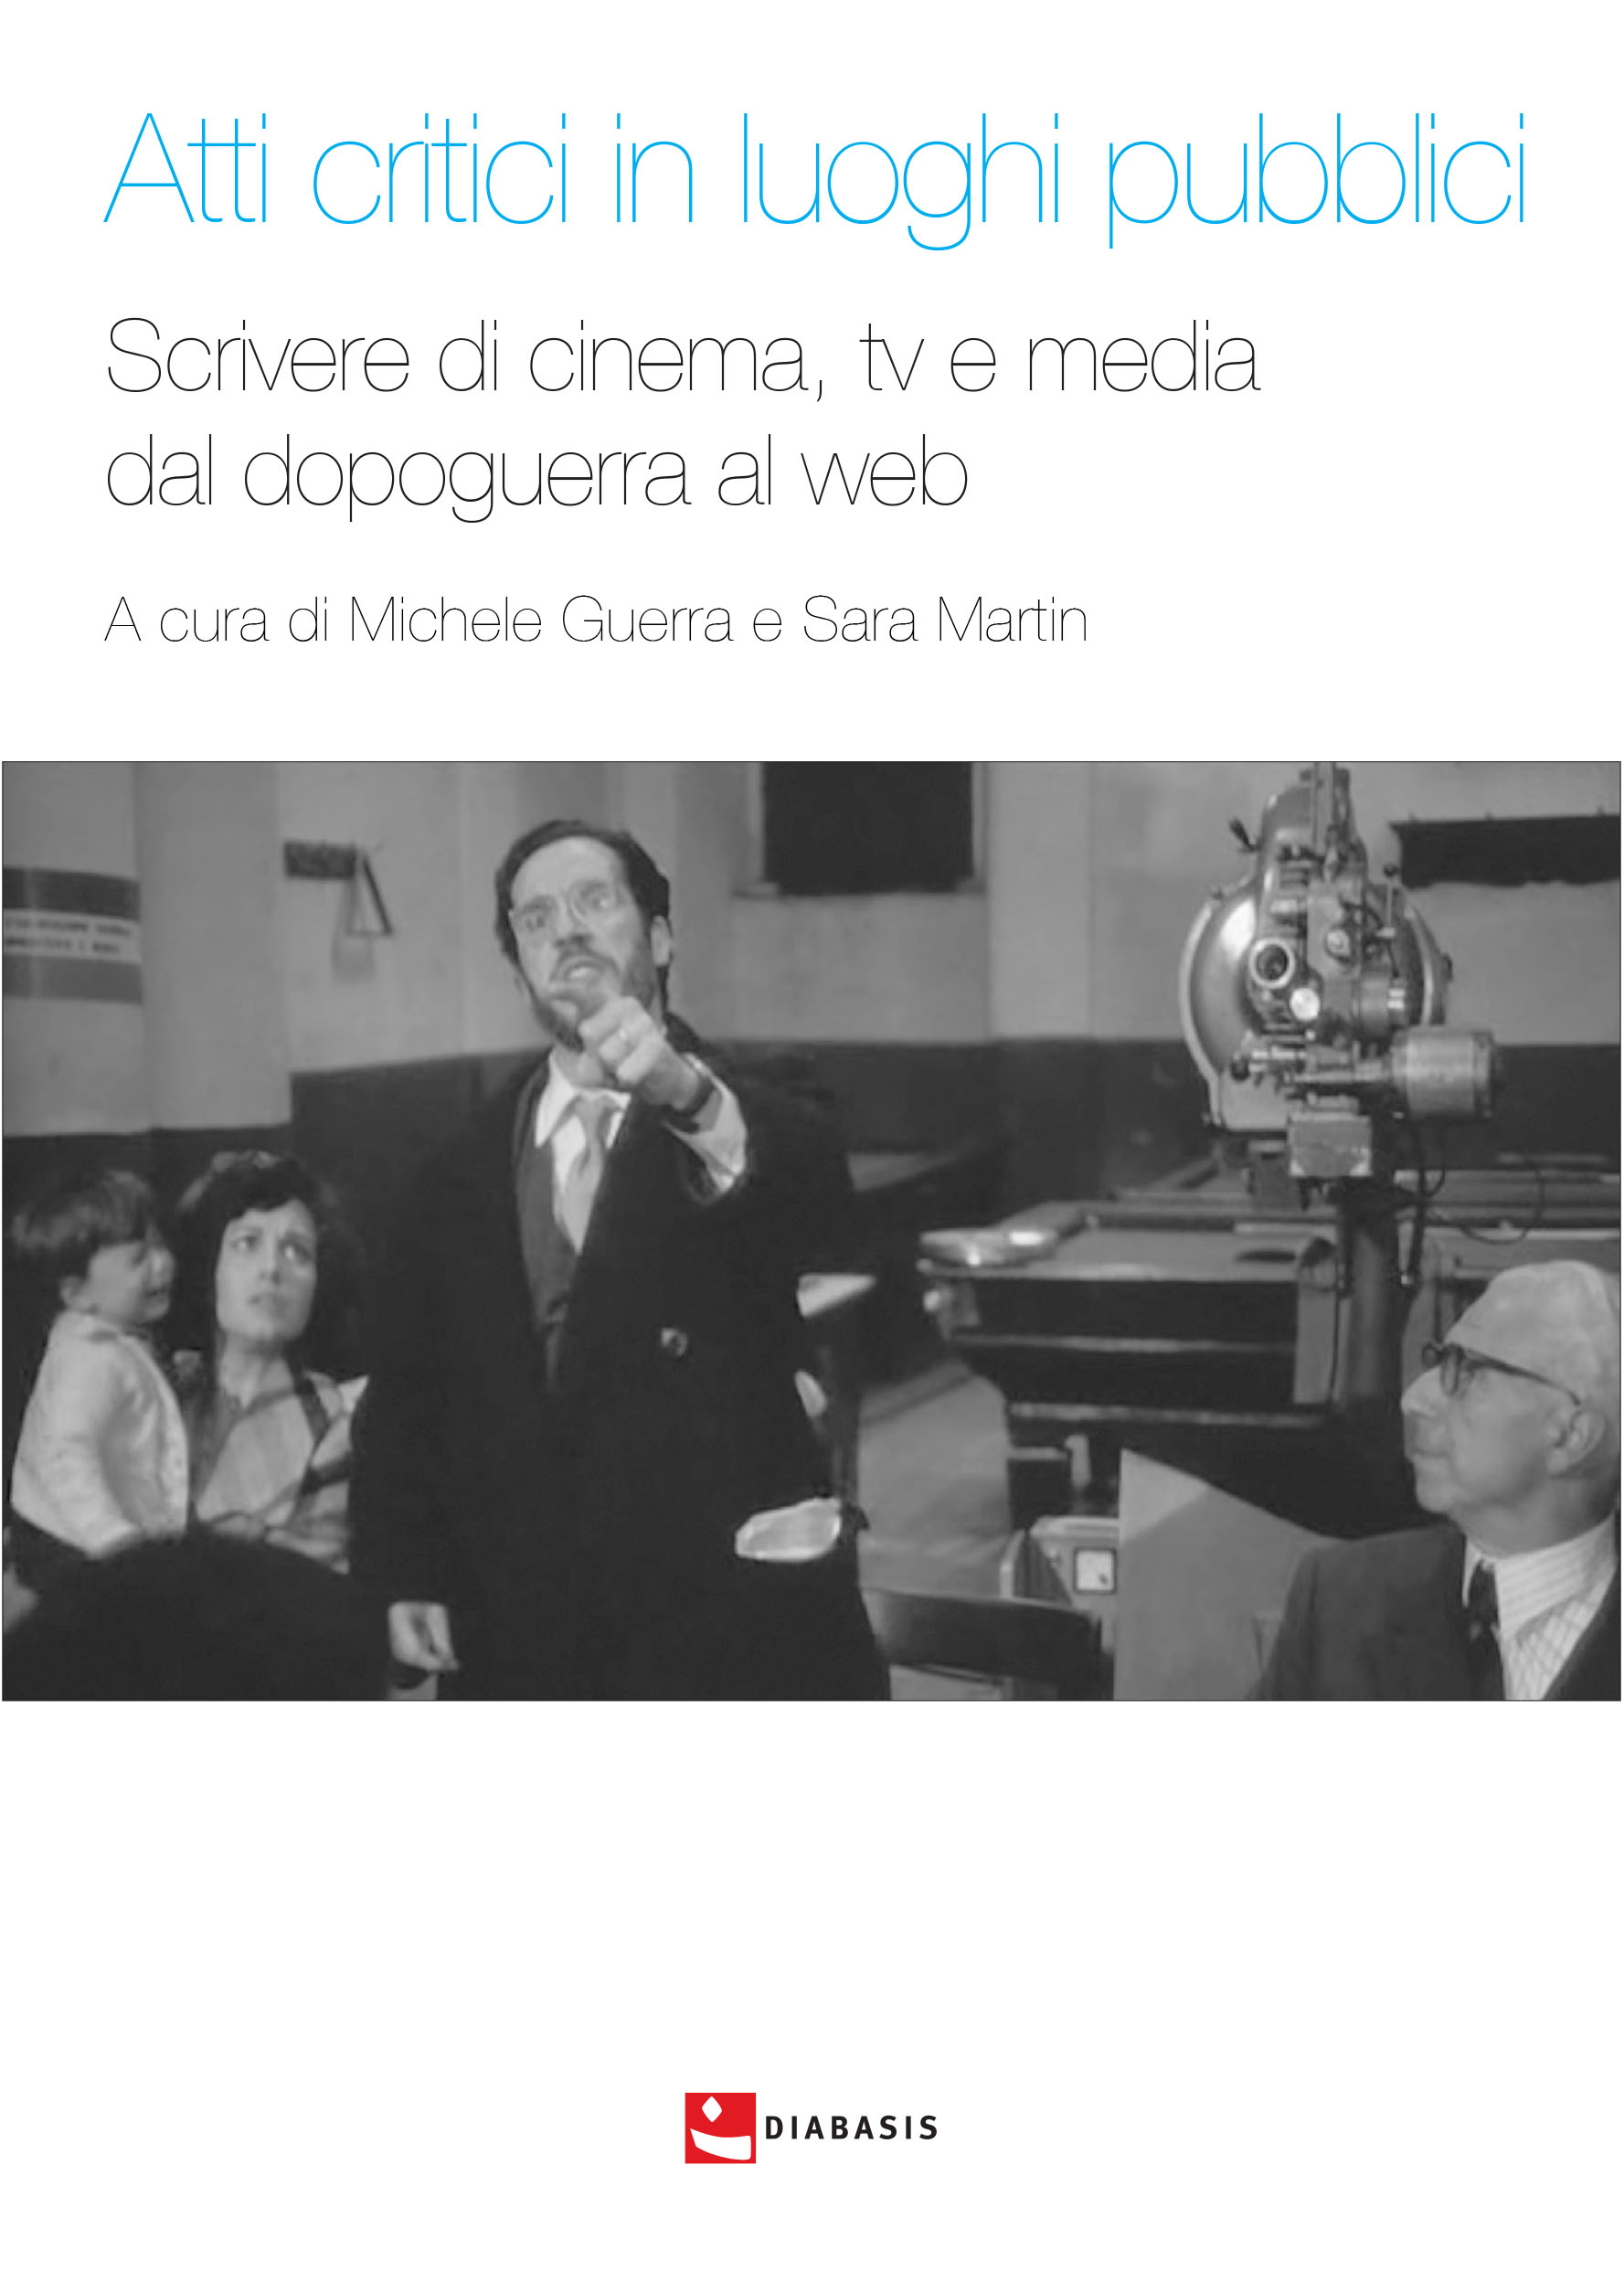 Kapitel, Televisione delle origini e critica cinematografica : per una genealogia della critica televisiva in Italia (1953-1960), Diabasis